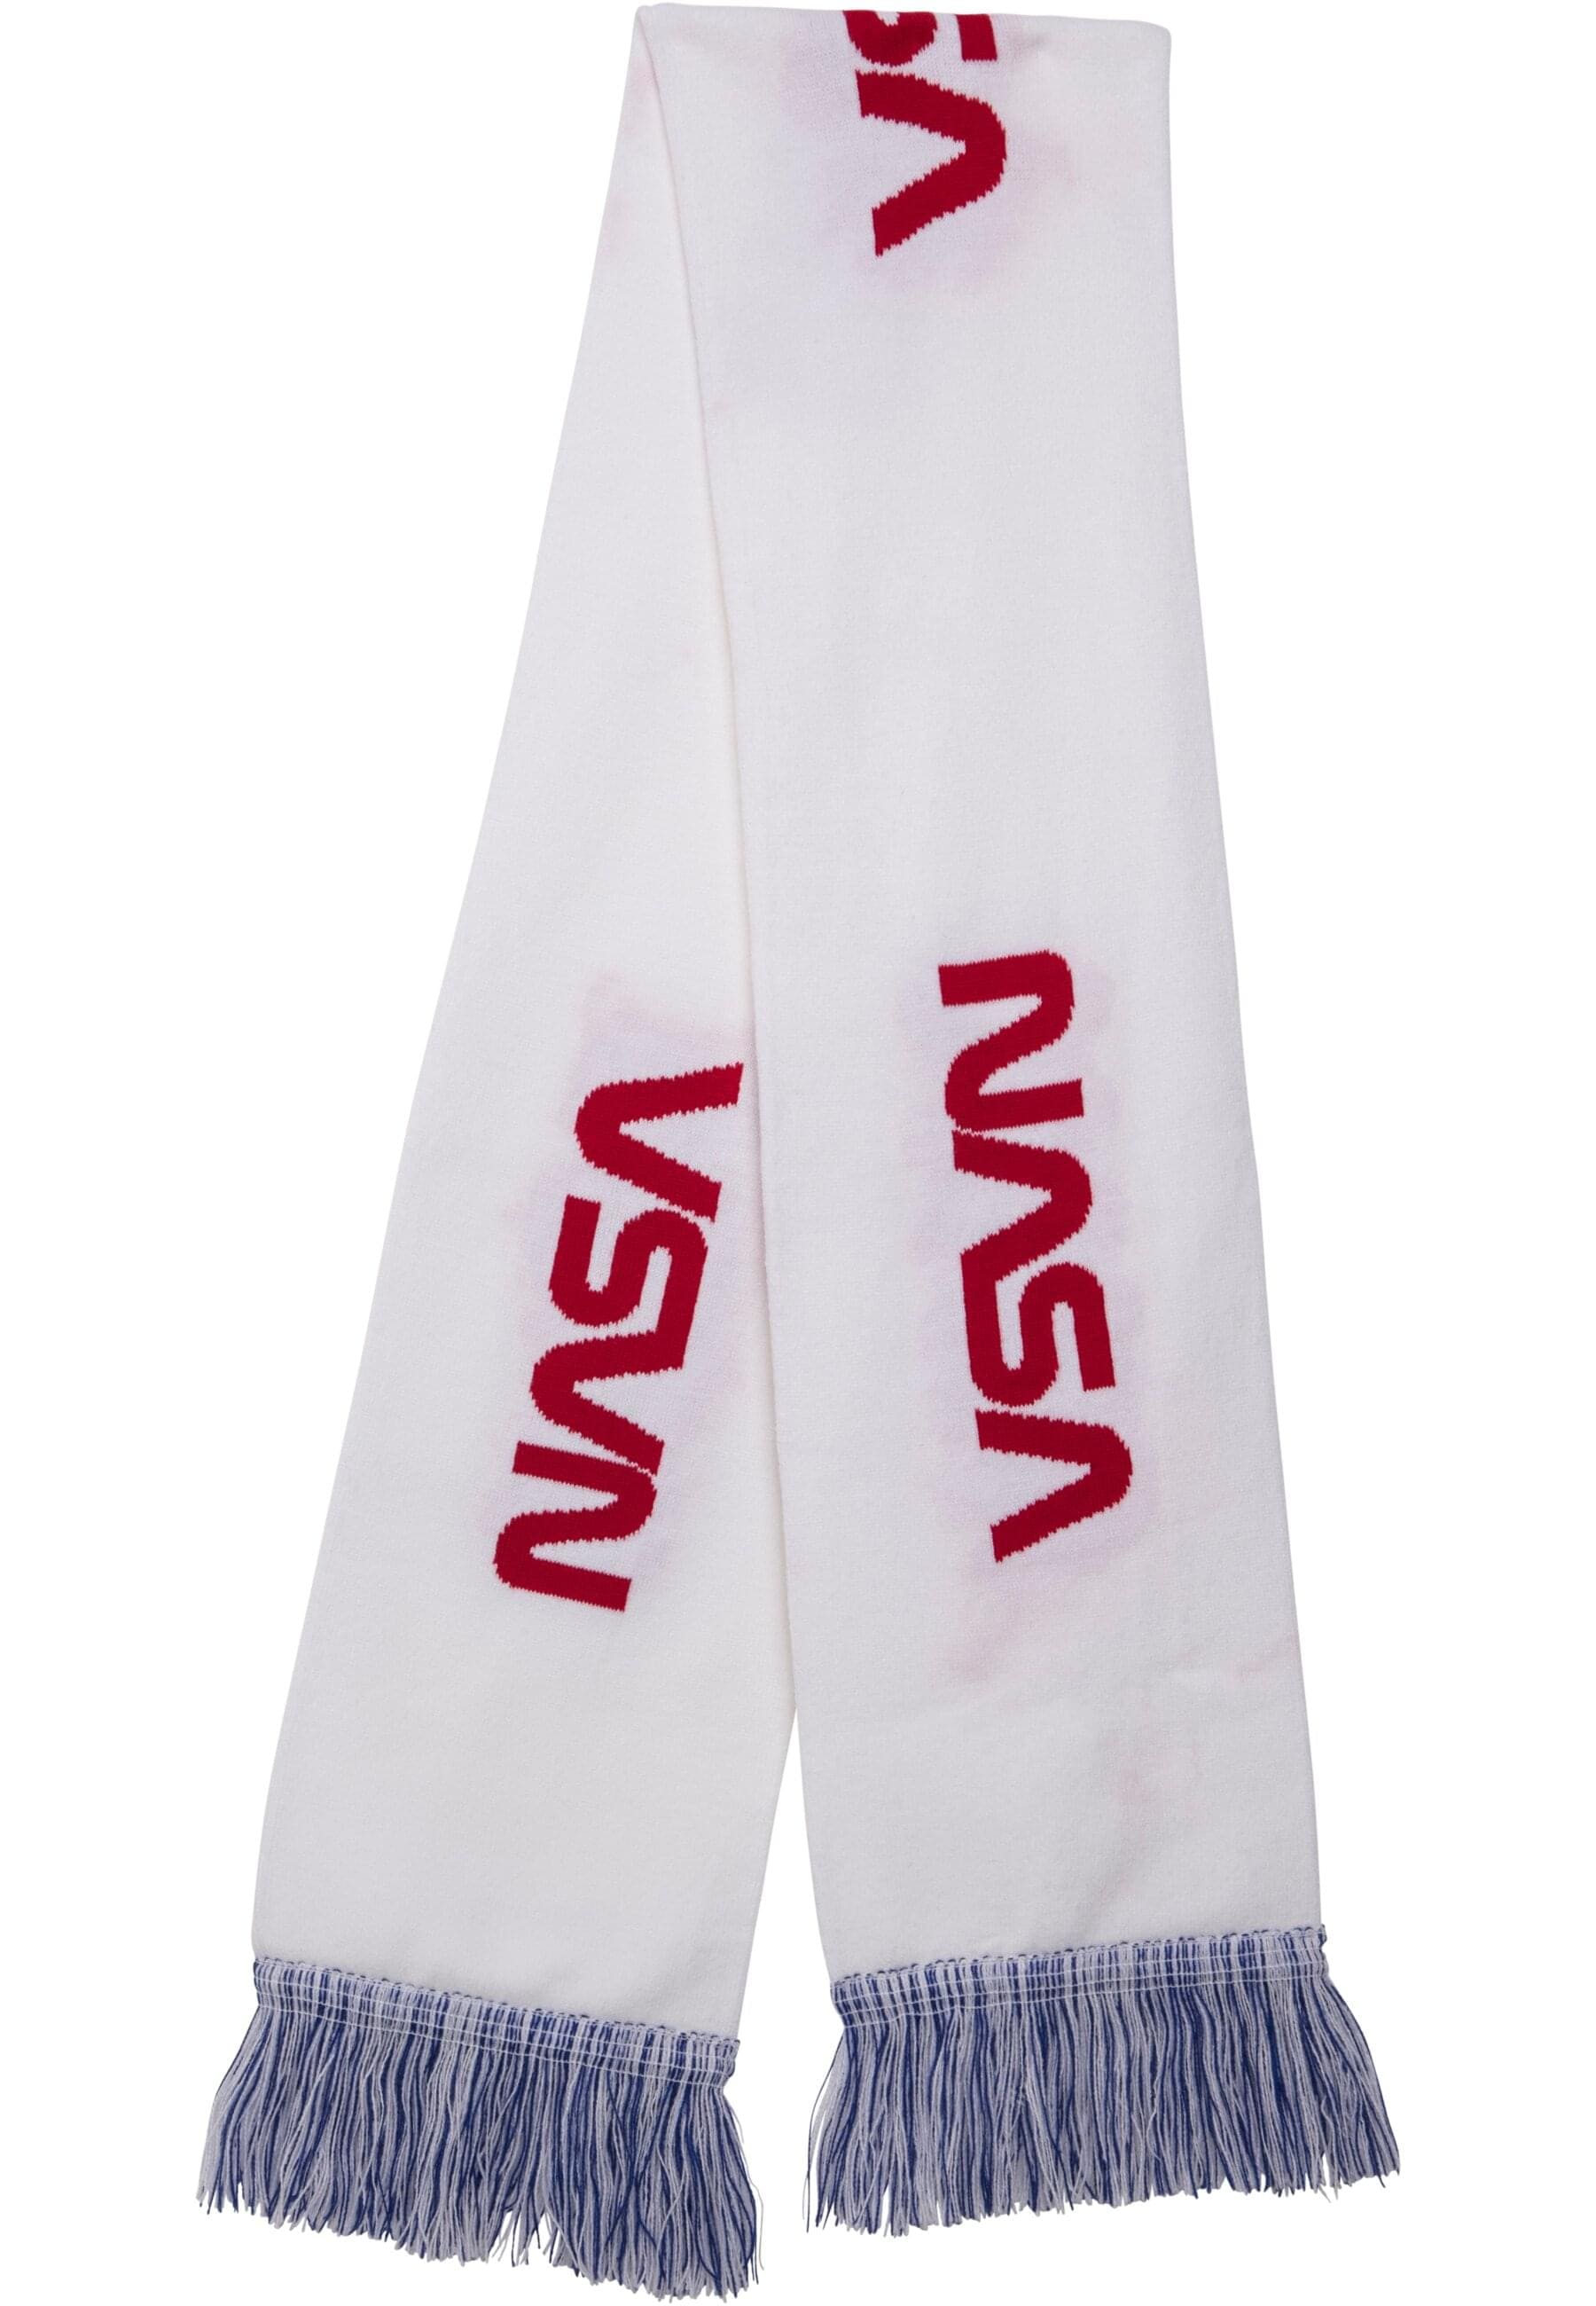 MisterTee Schal »MisterTee Unisex NASA Scarf Knitted«, (1 St.)